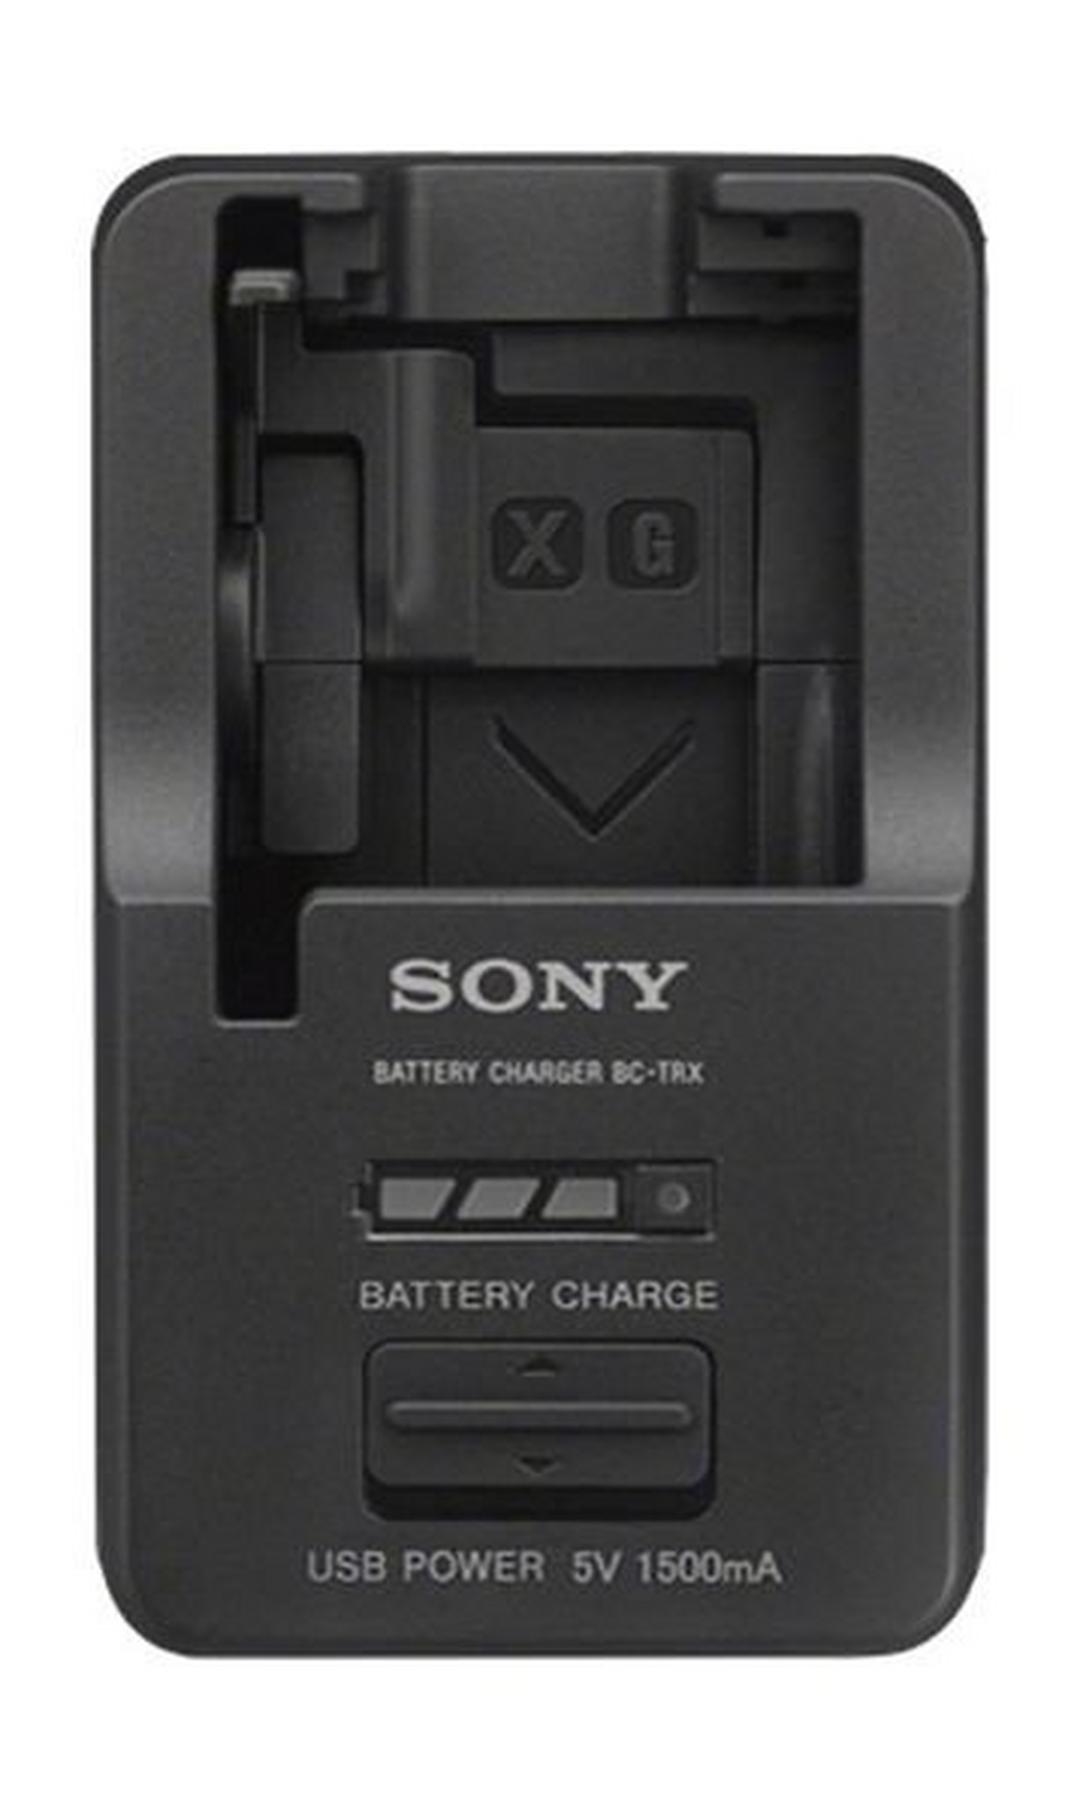 شاحن محمول سوني لبطارية الكاميرا - أسود (BCTRX)